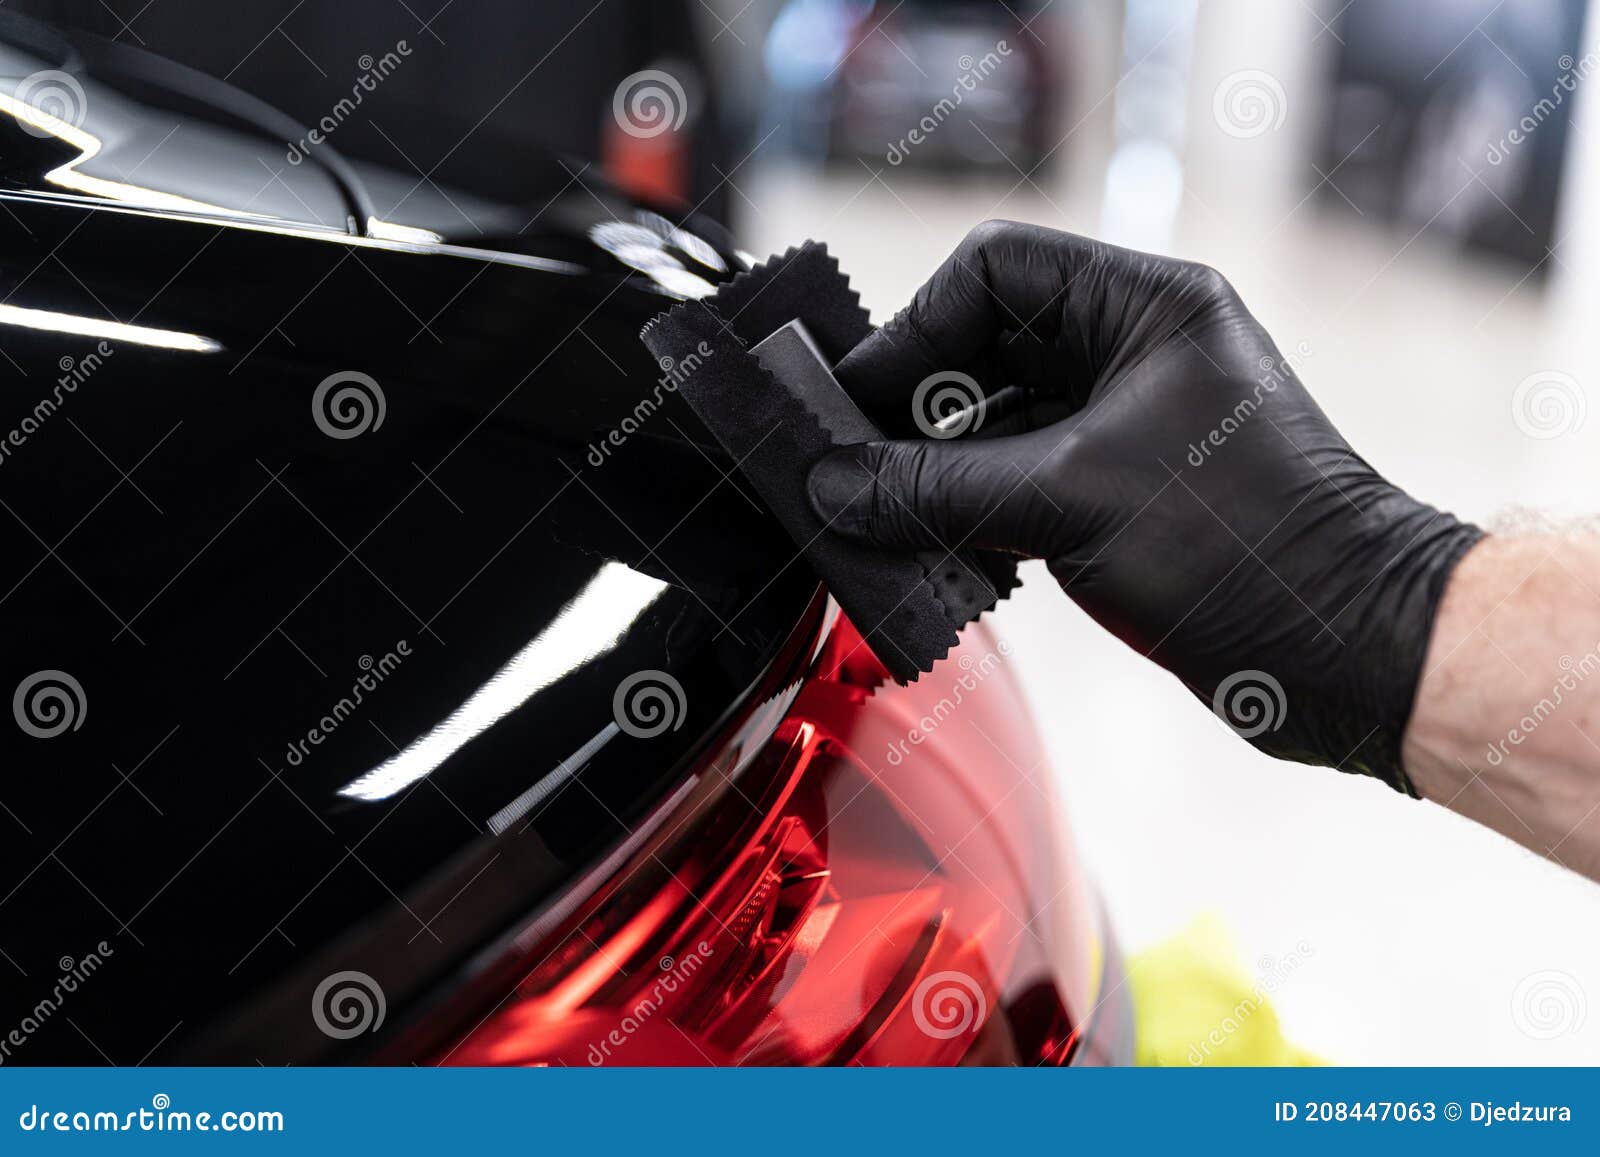 car detailing studio worker applying ceramic coating